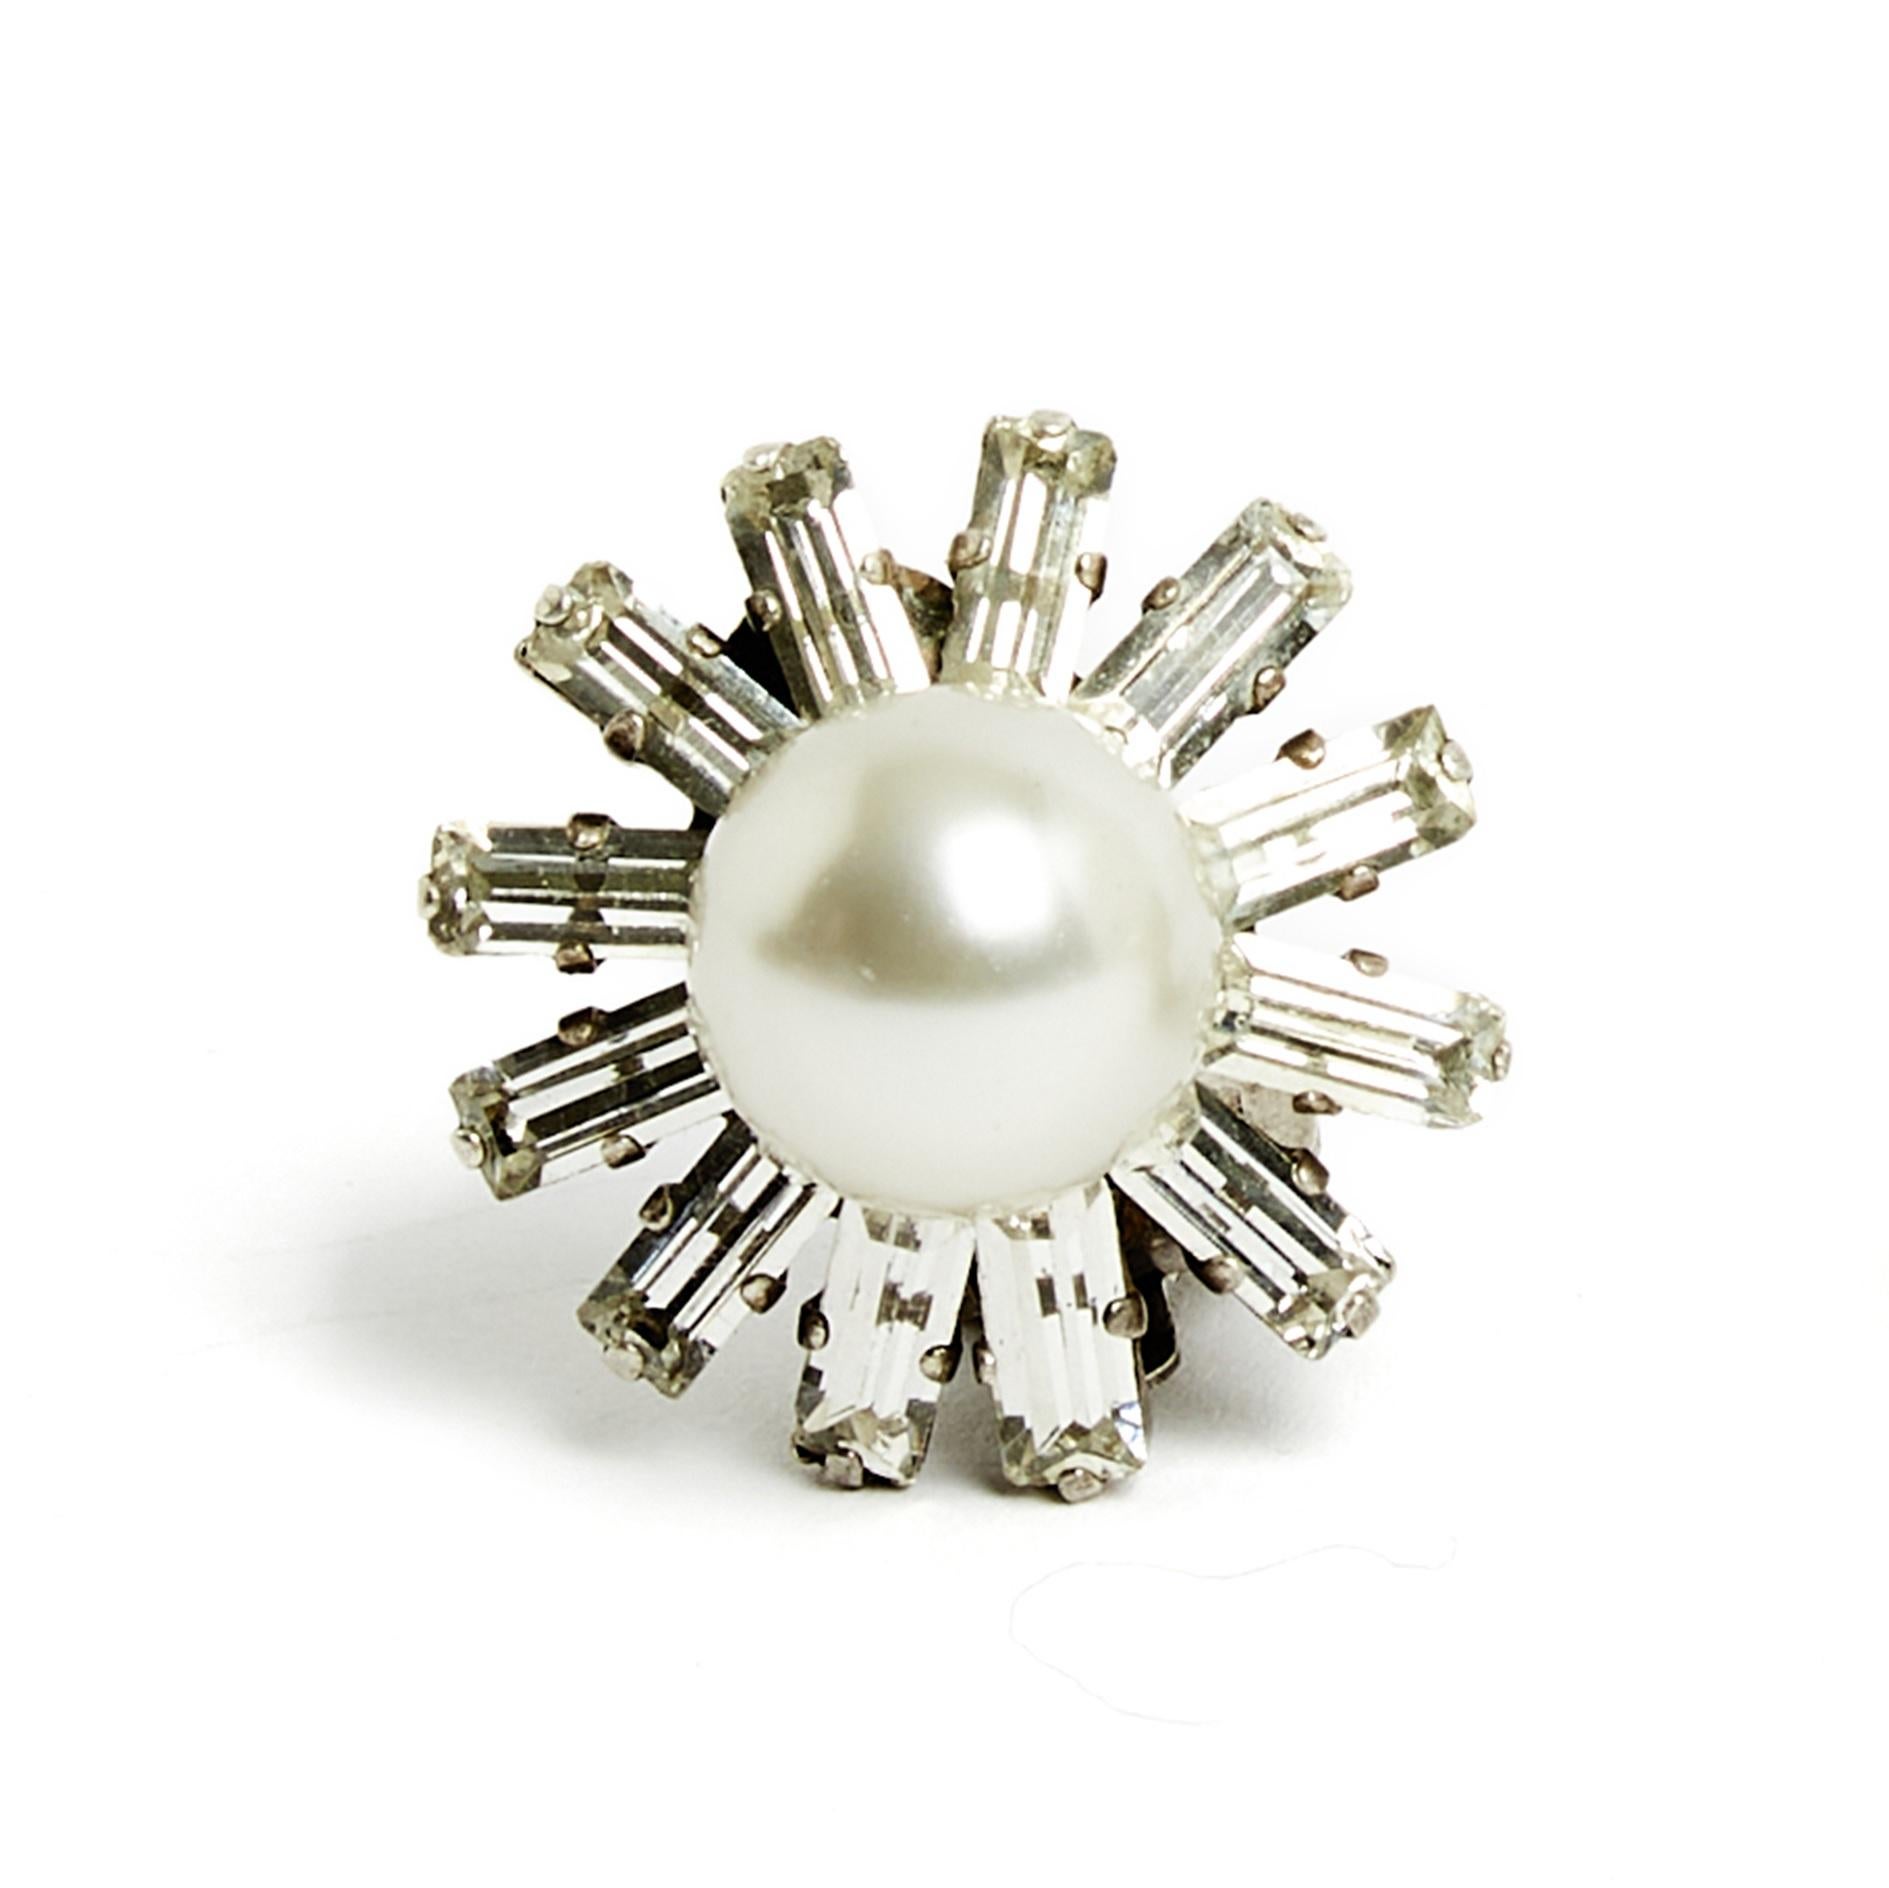 Chanel Haute Couture Ohrringe, silberne Metallclips, bestehend aus einer großen Phantasieperle, umgeben von weißen sternförmigen Baguettestrasssteinen. Durchmesser 2.5 cm. Die Ohrringe sind wahrscheinlich Vintage, aber sie sind in sehr gutem